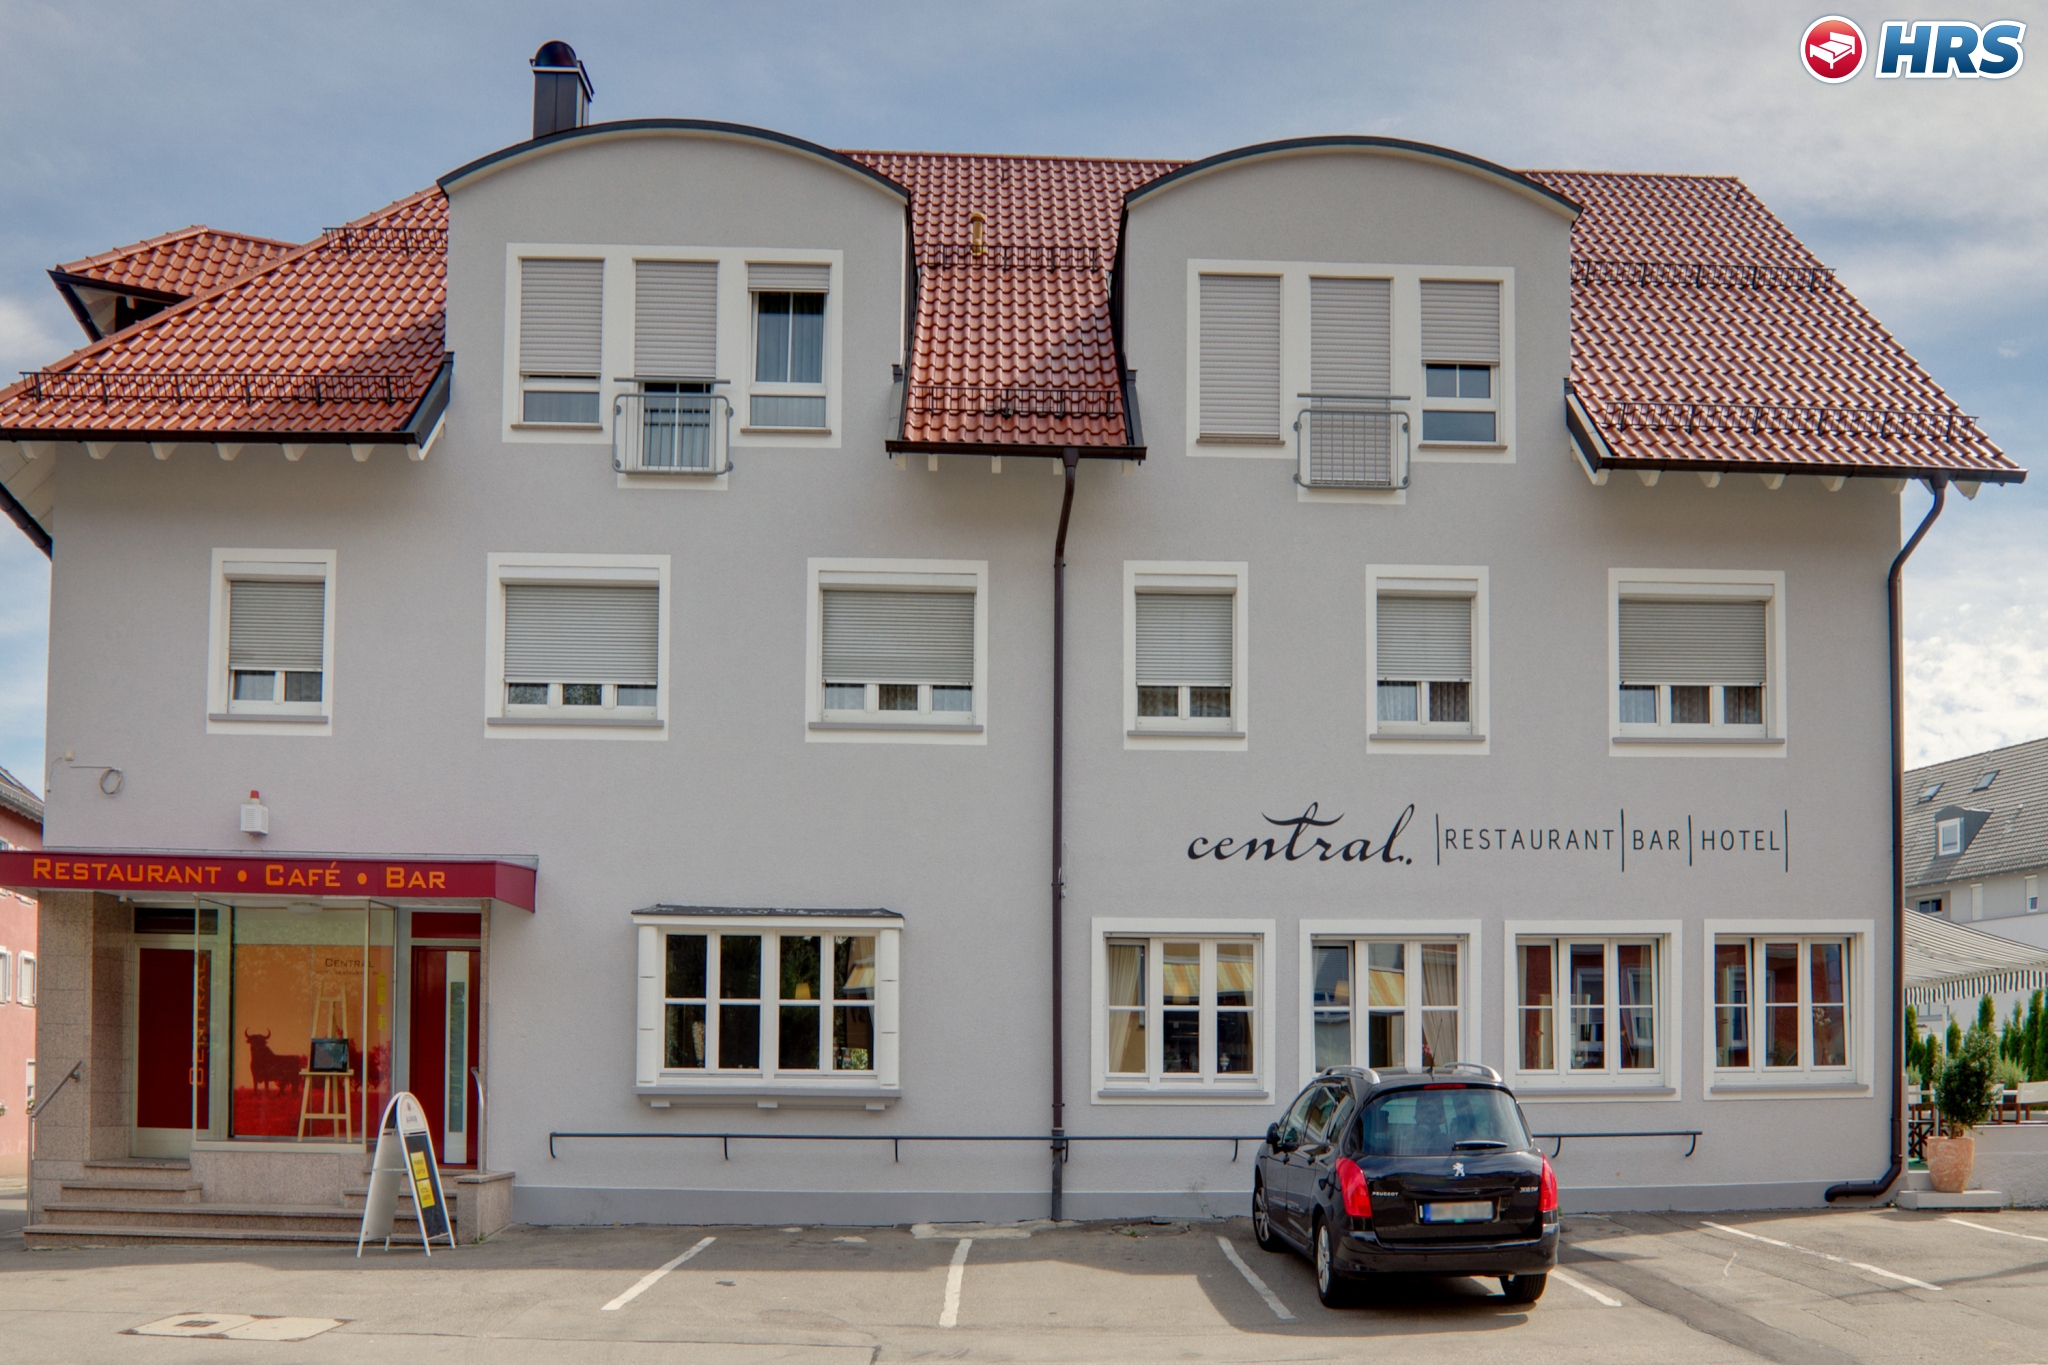 Central Hotel (Friedrichshafen)